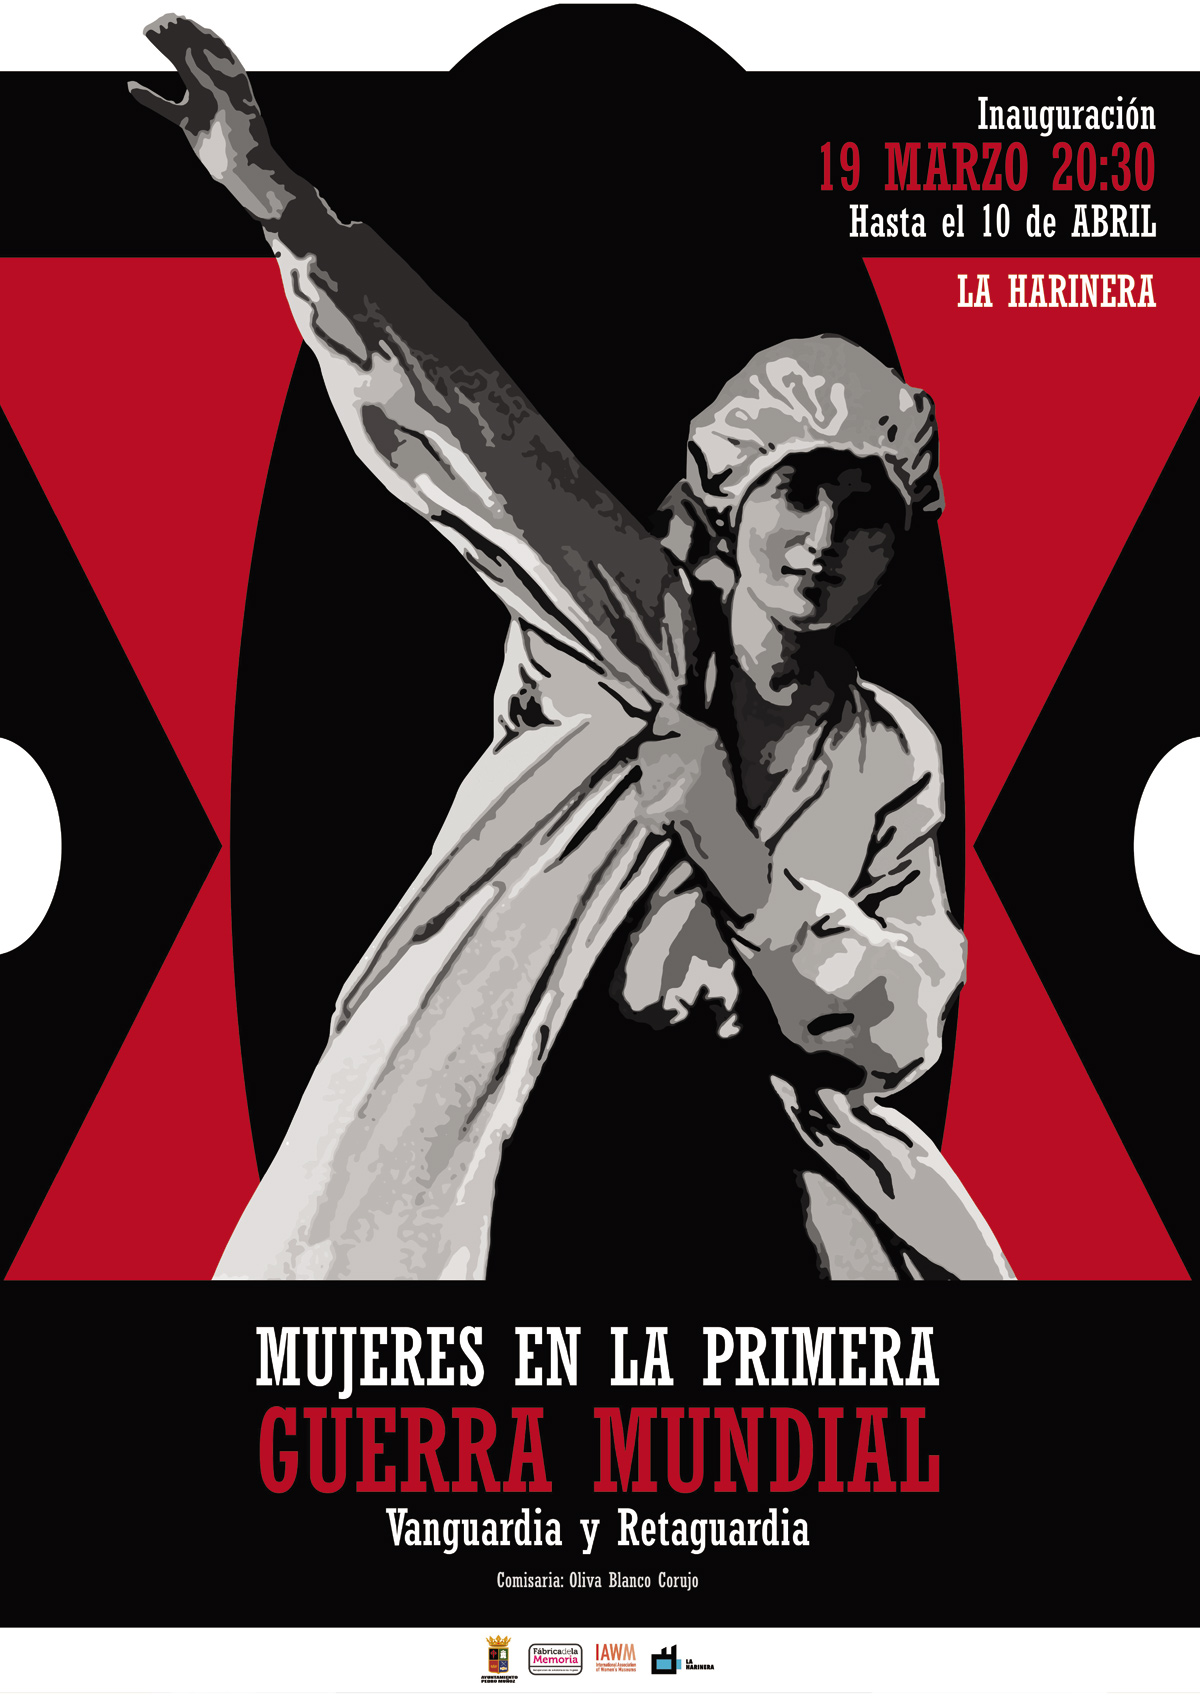 La Harinera expone “Mujeres en la Primera Guerra Mundial. Vanguardia y Retaguardia”